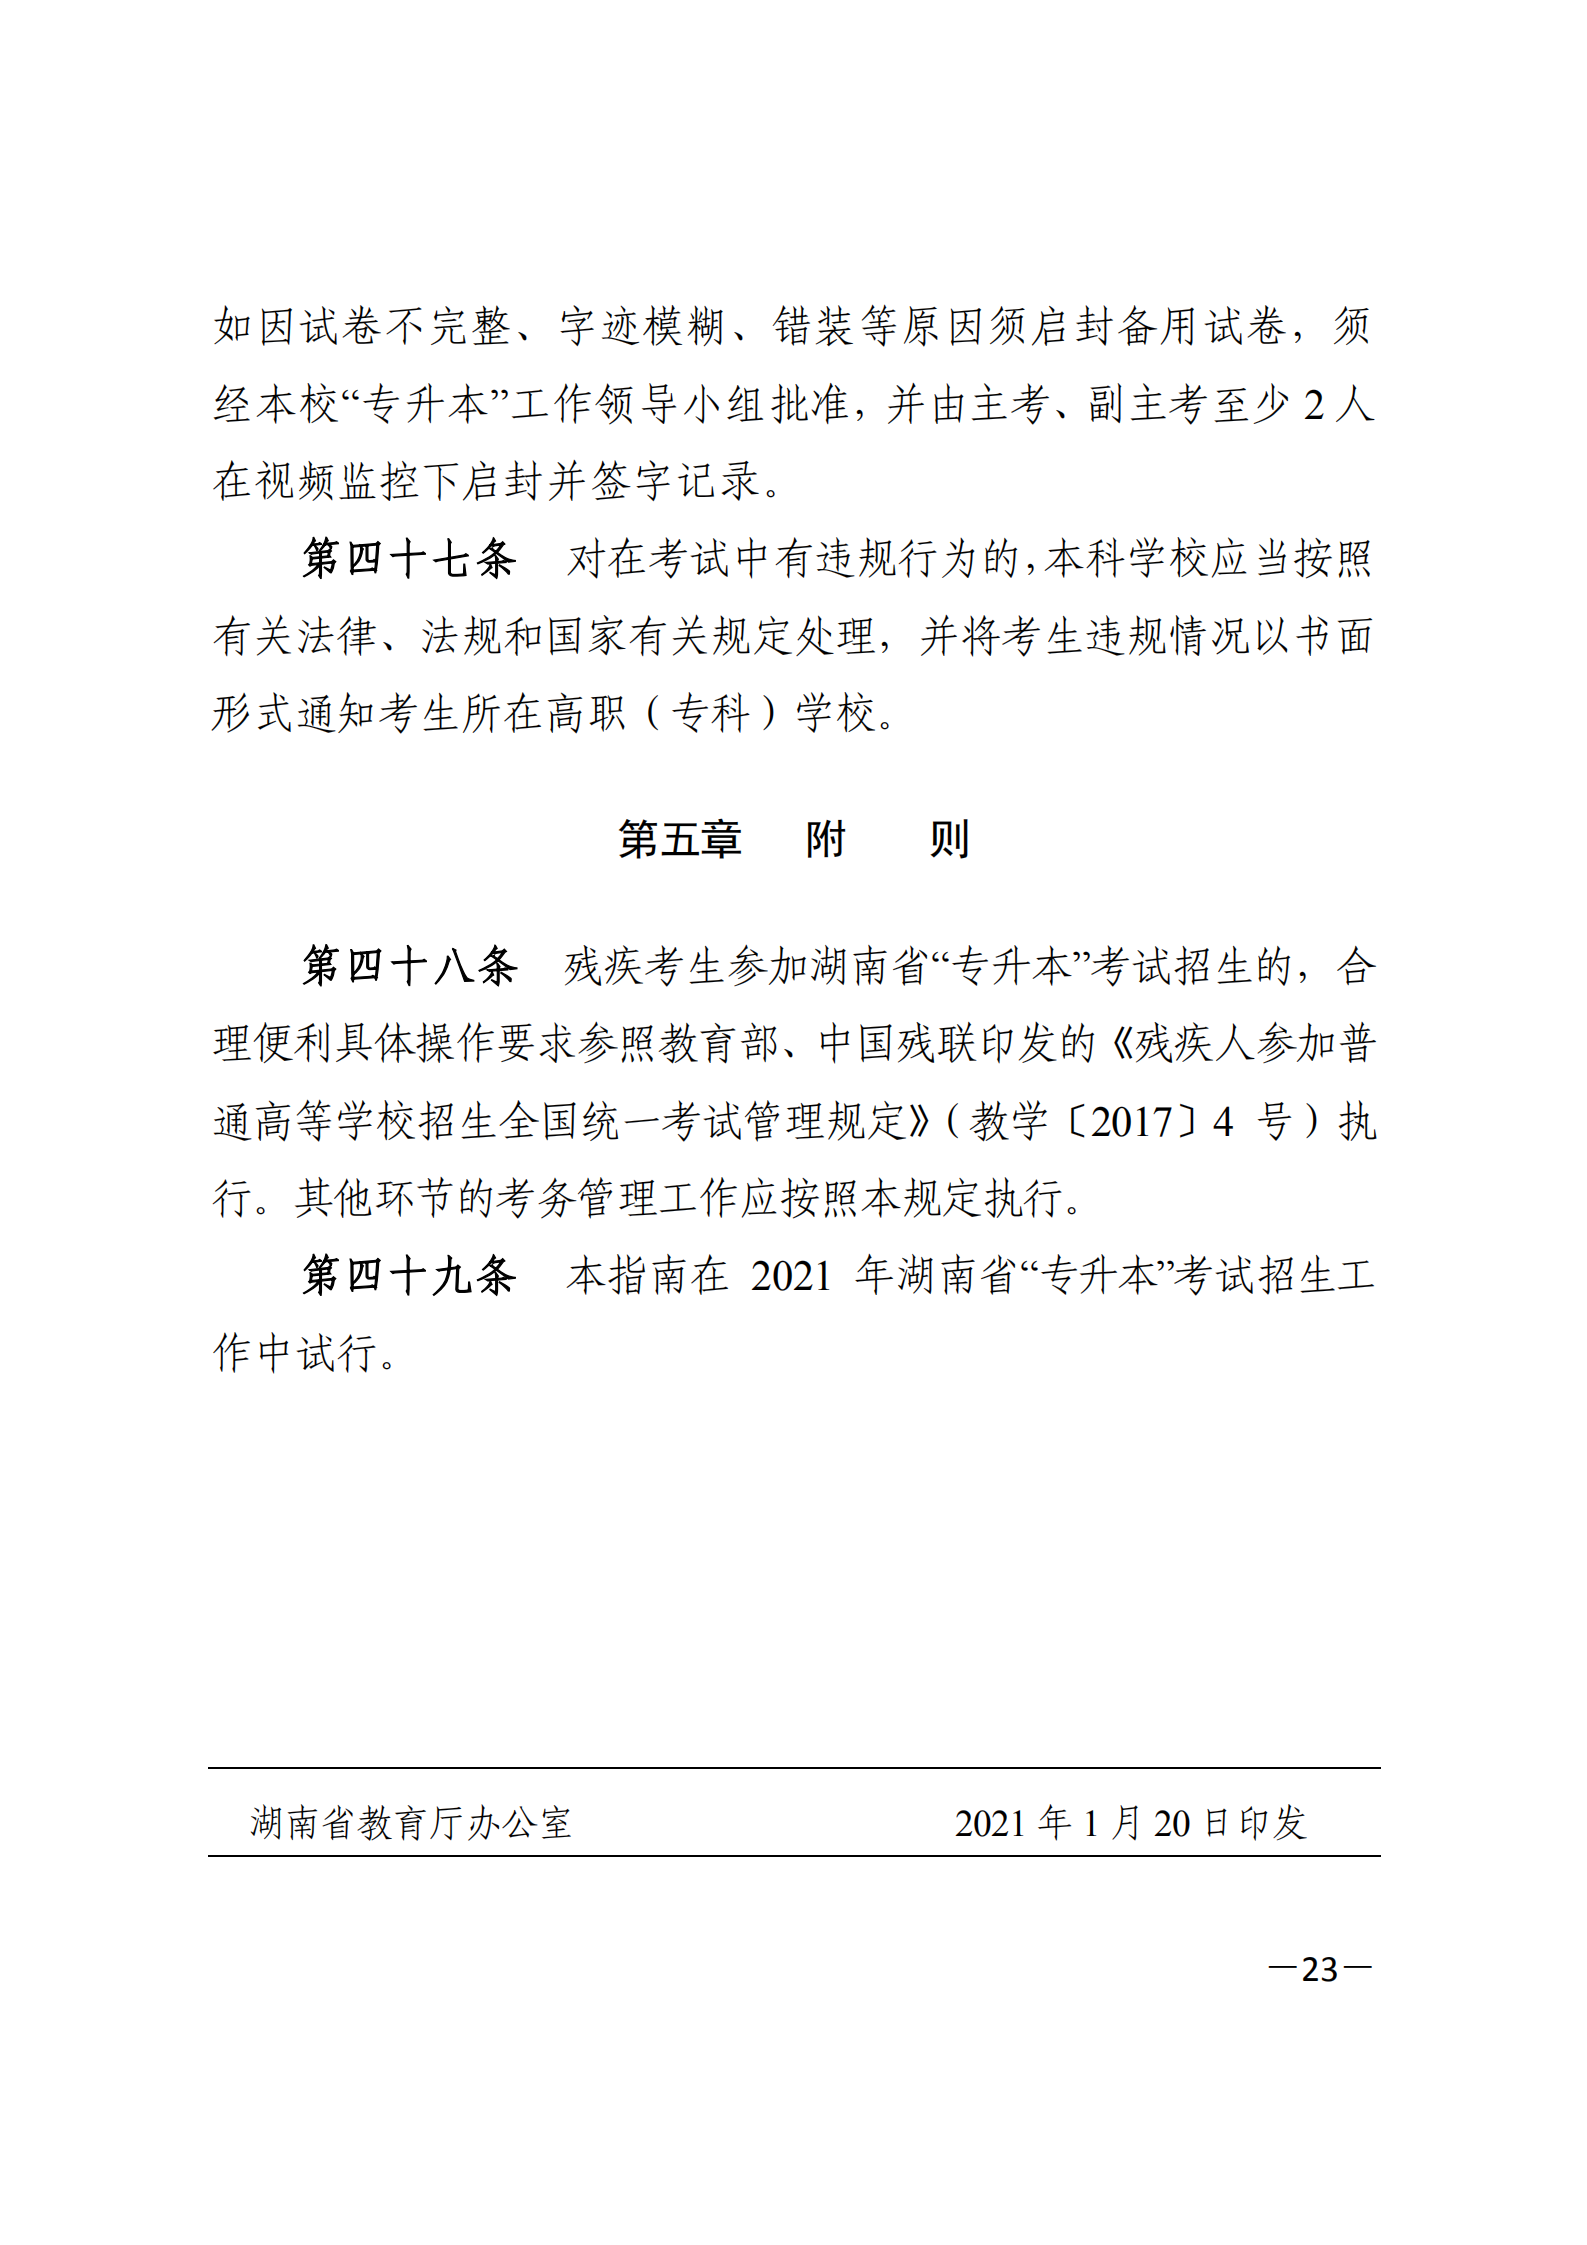 3_湘教发〔2021〕2号 关于印发《2021年湖南省普通高等教育“专升本”考试招生工作实施方案》的通知_22.png